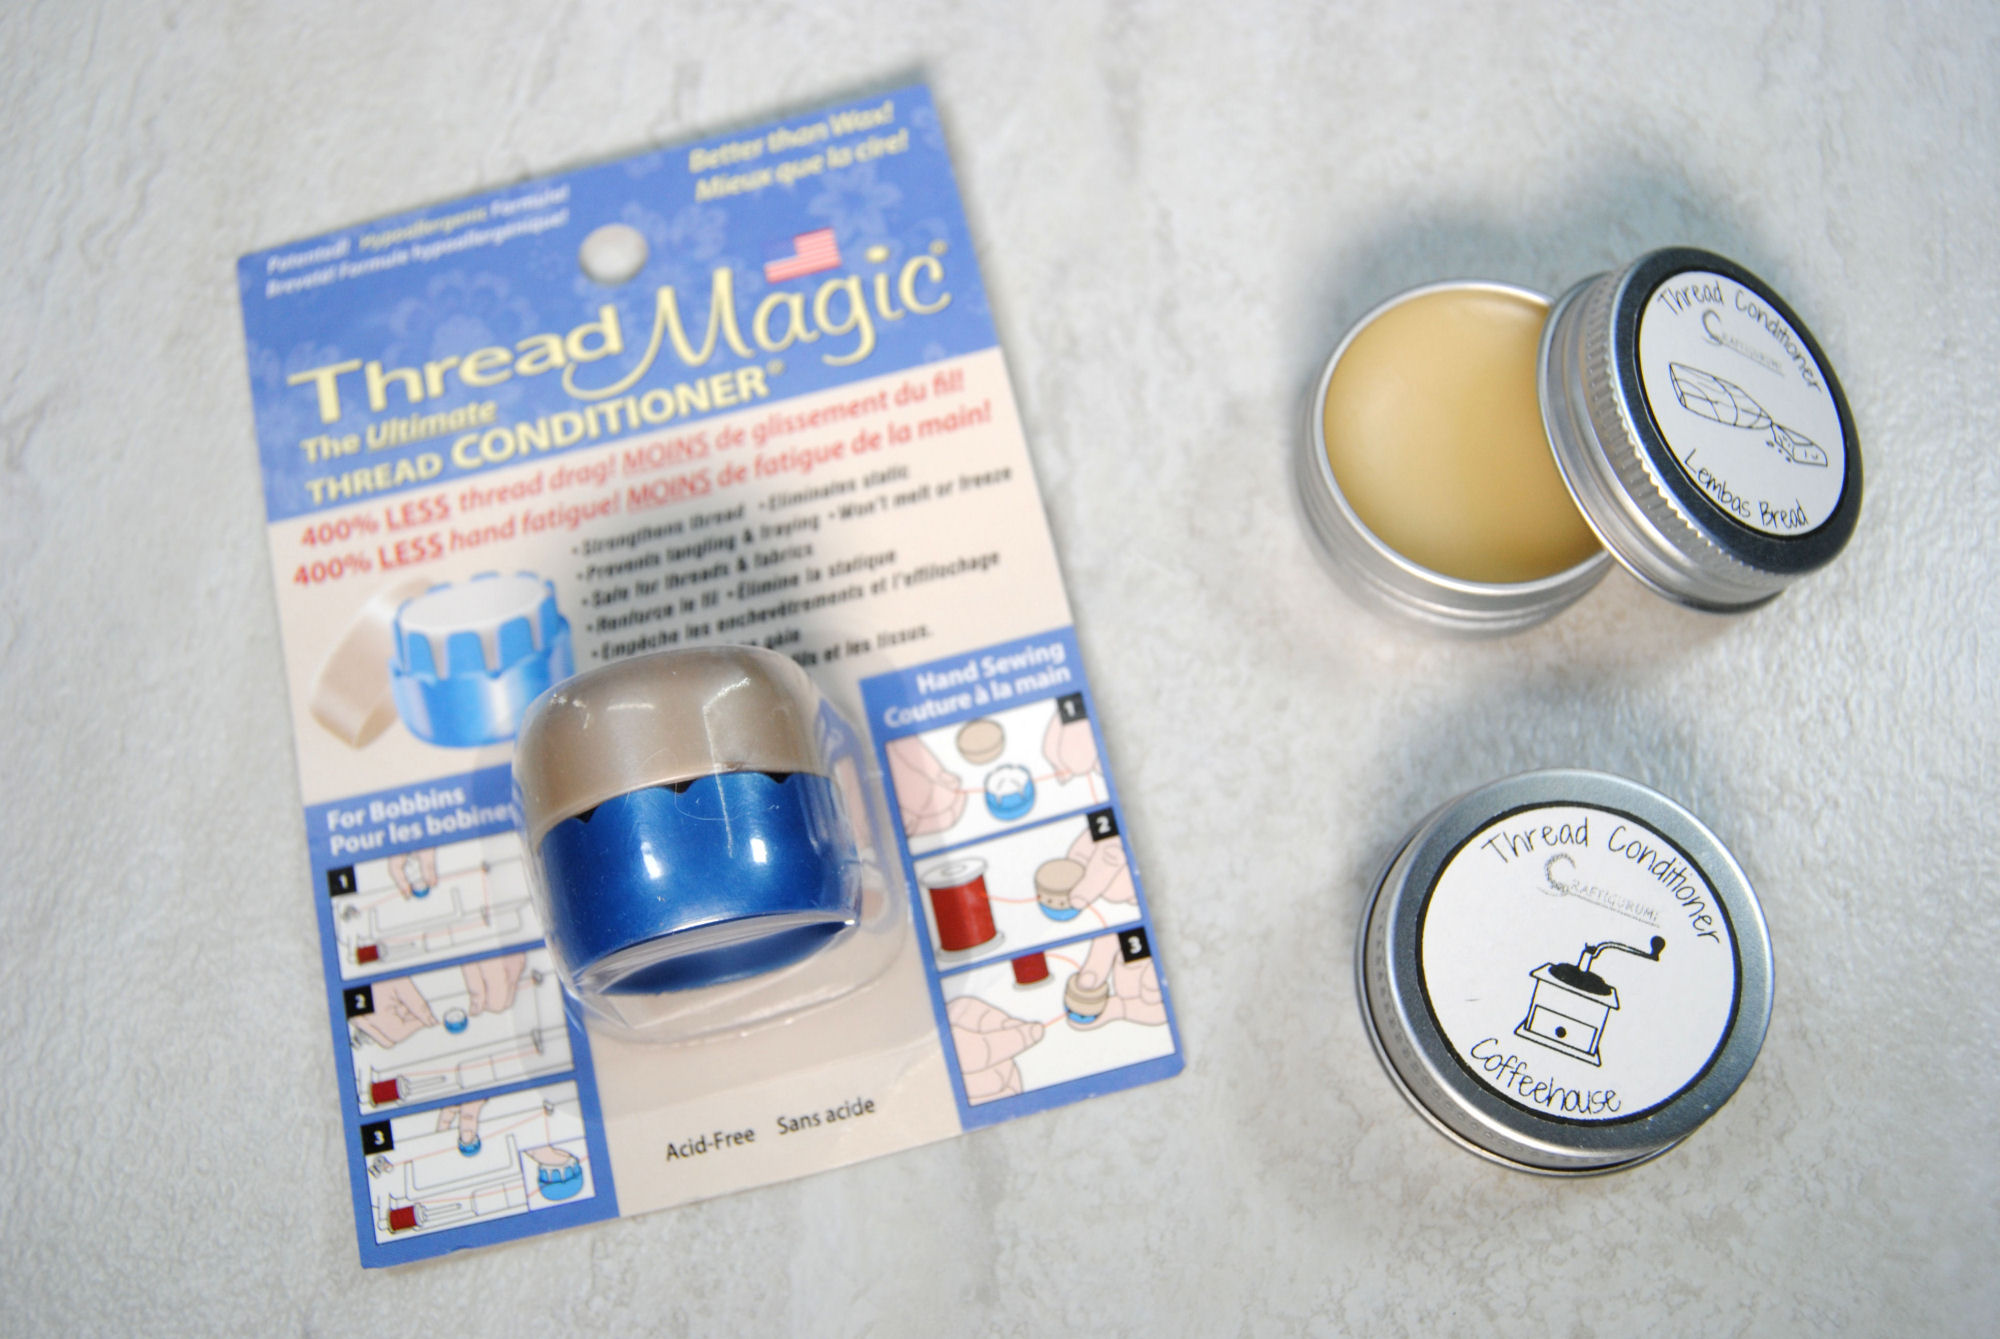 Thread Magic - Thread Conditioner